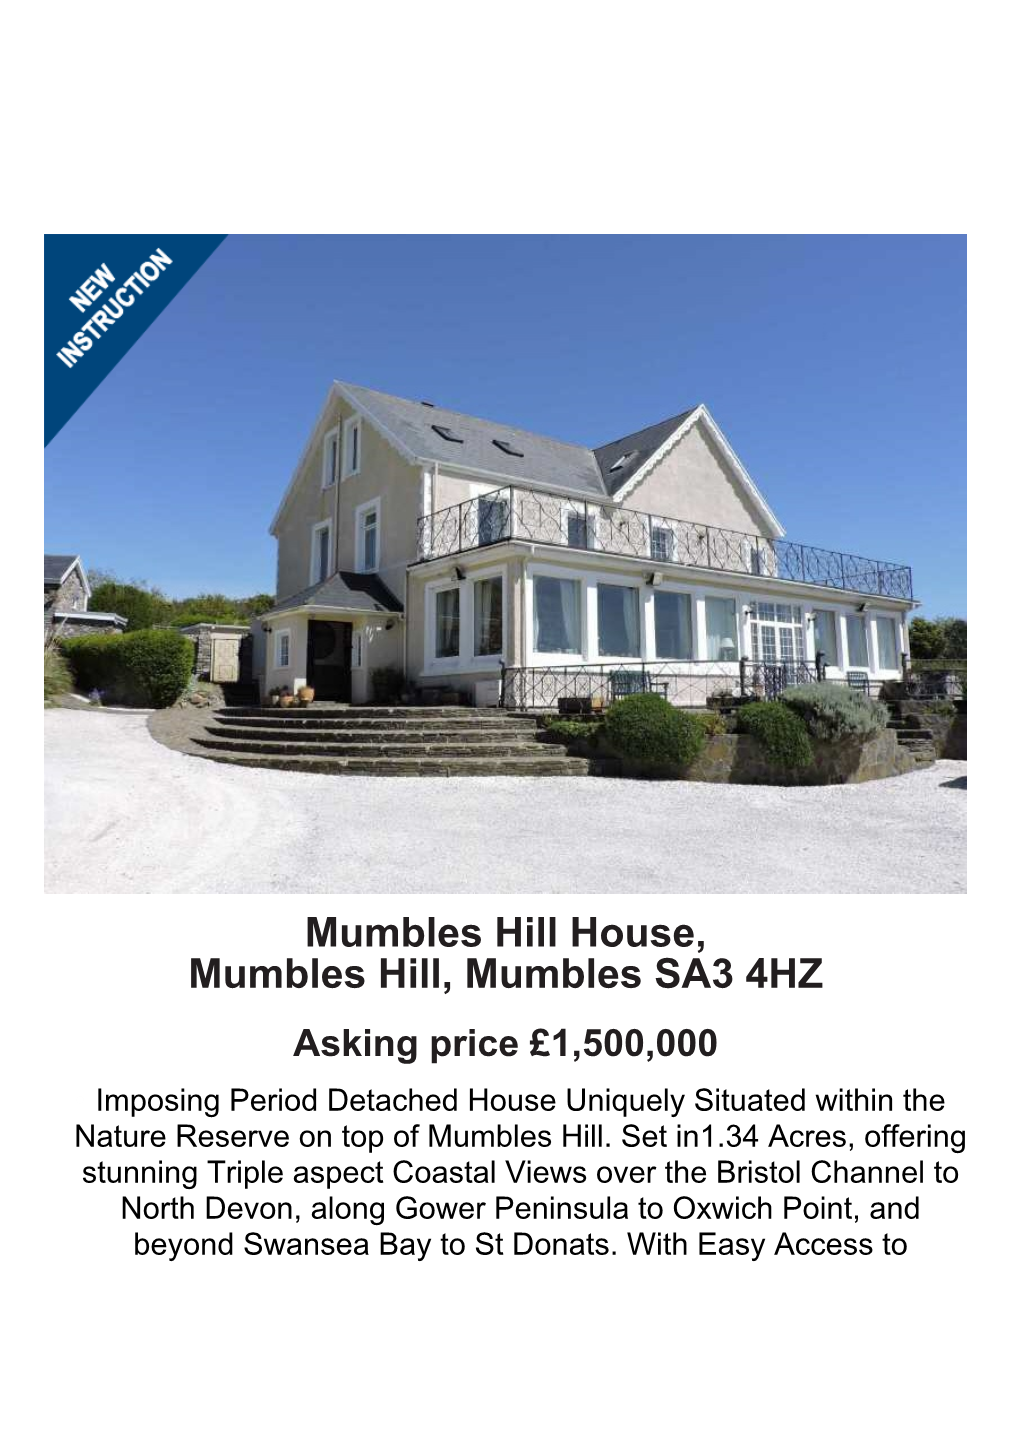 Mumbles Hill House, Mumbles Hill, Mumbles SA3